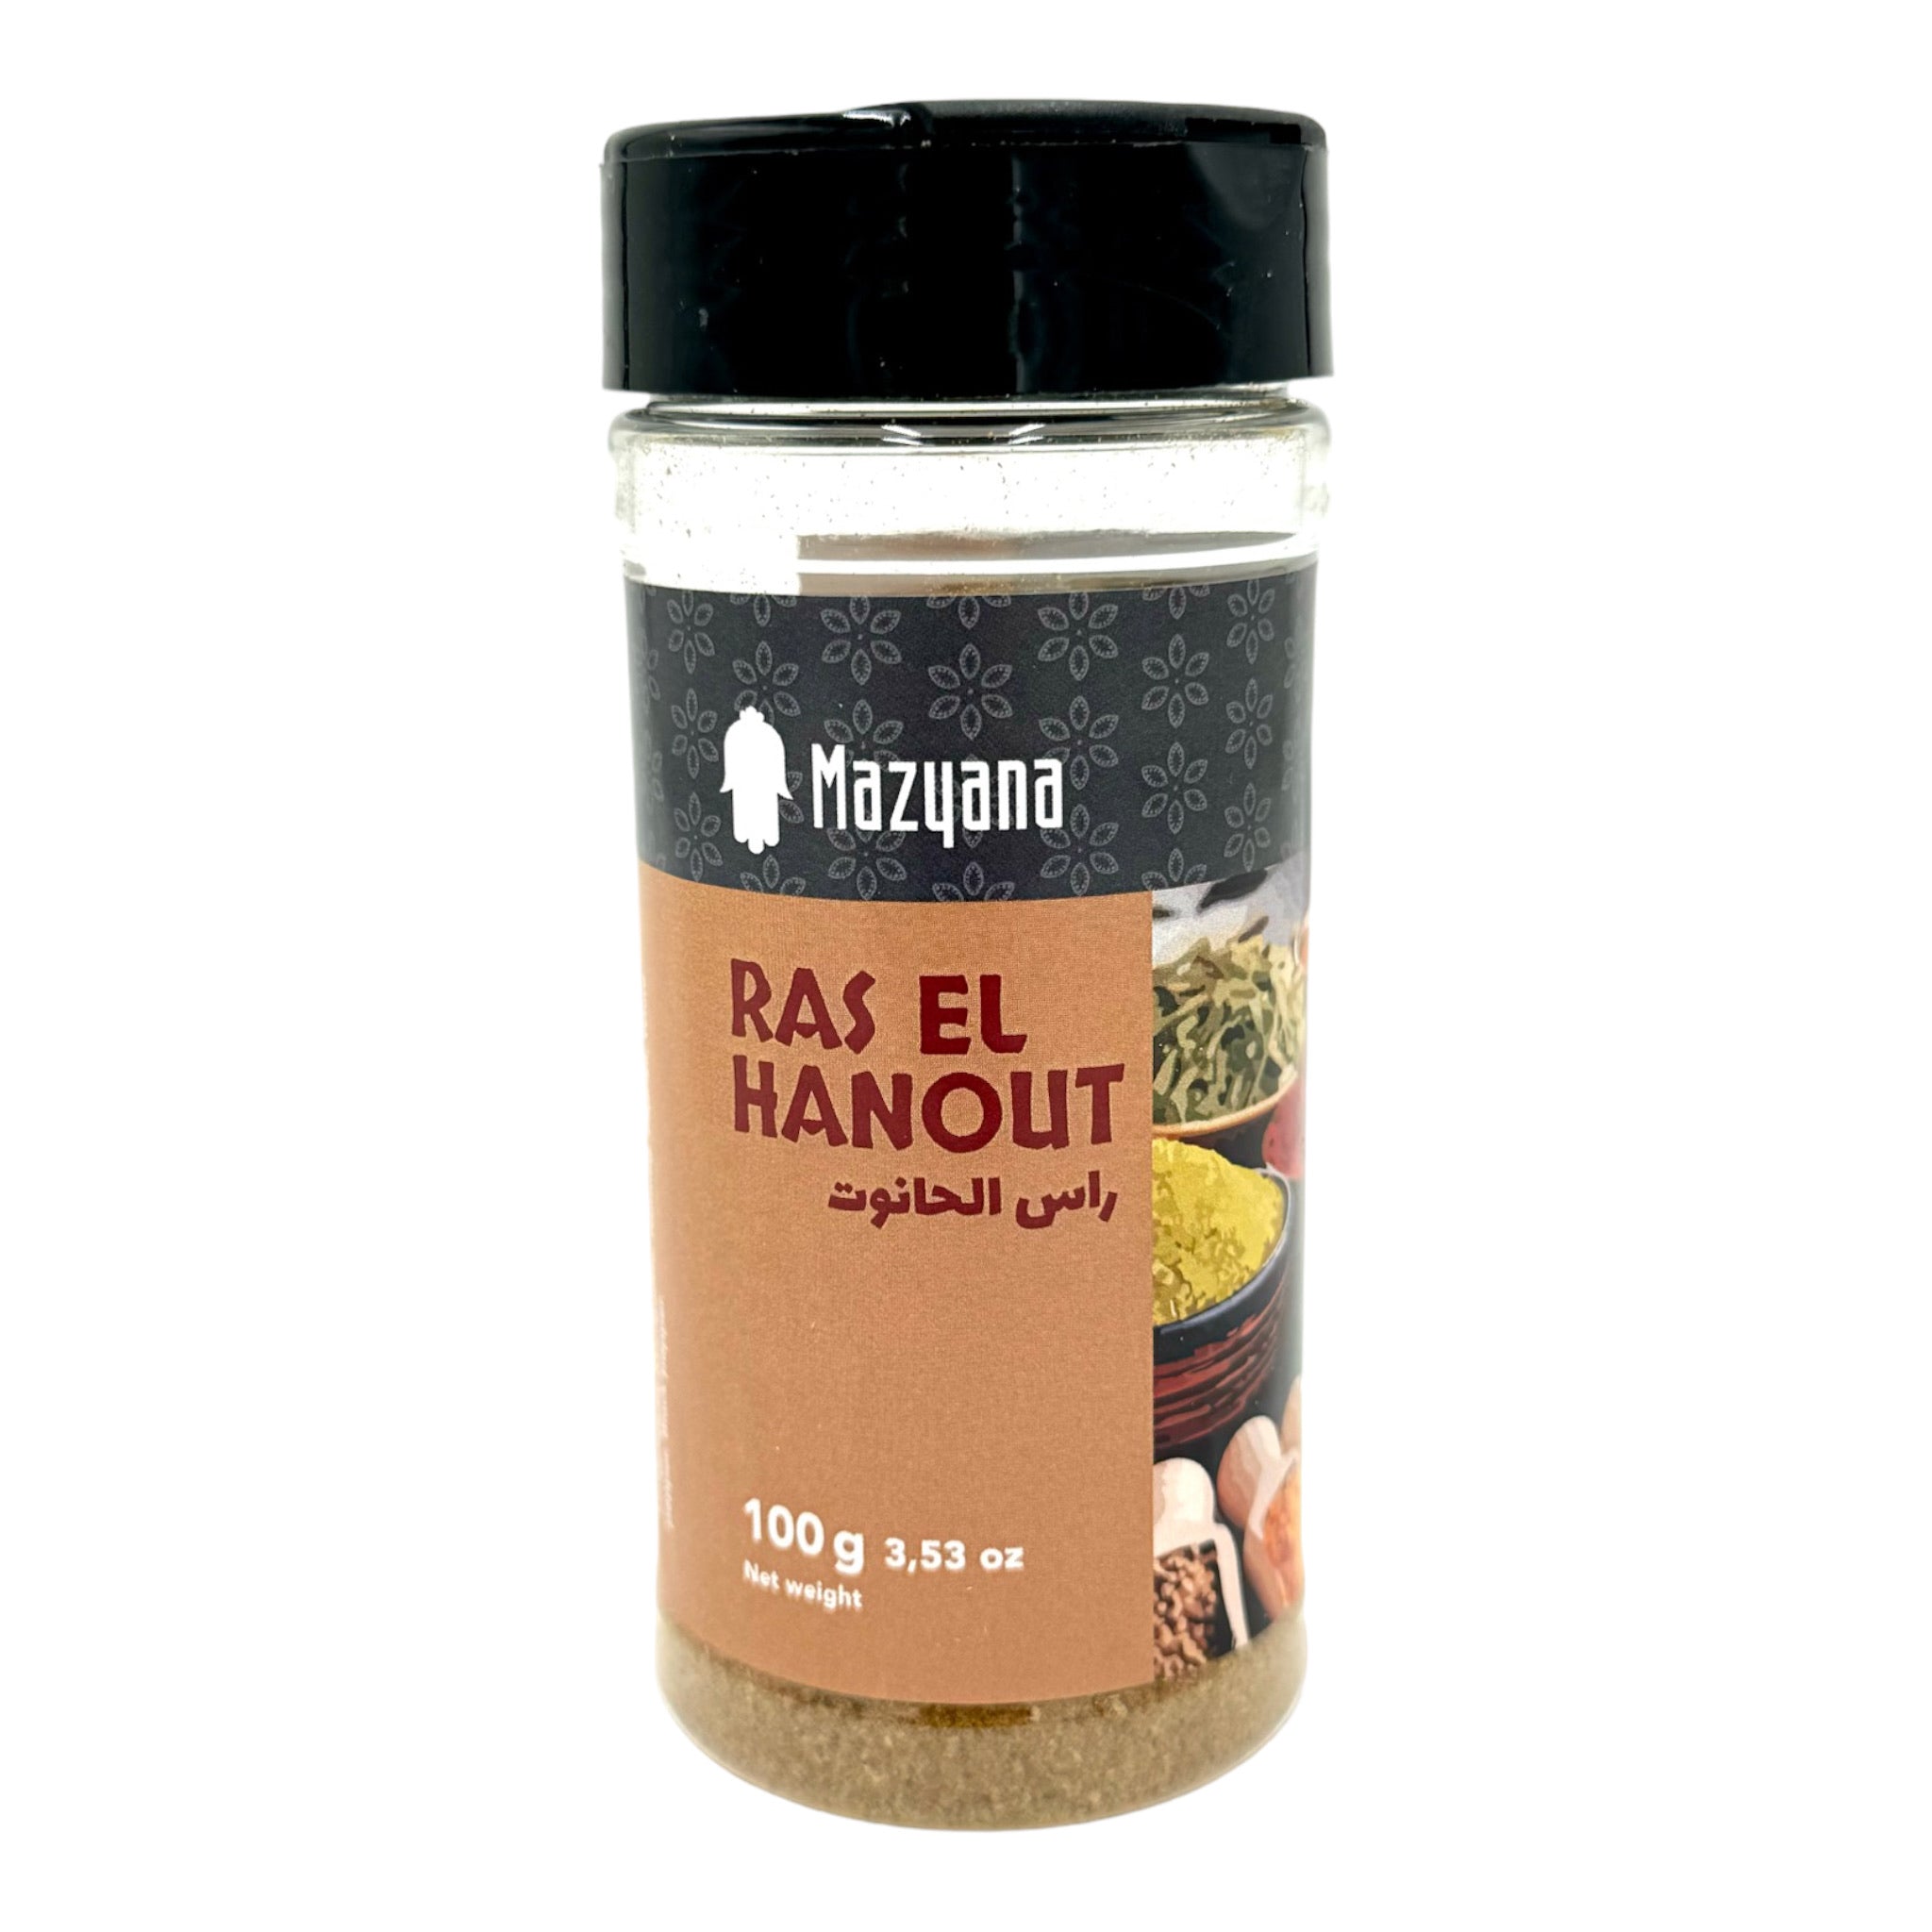 Ras El Hanout - Moroccan Spices by Mazyana 